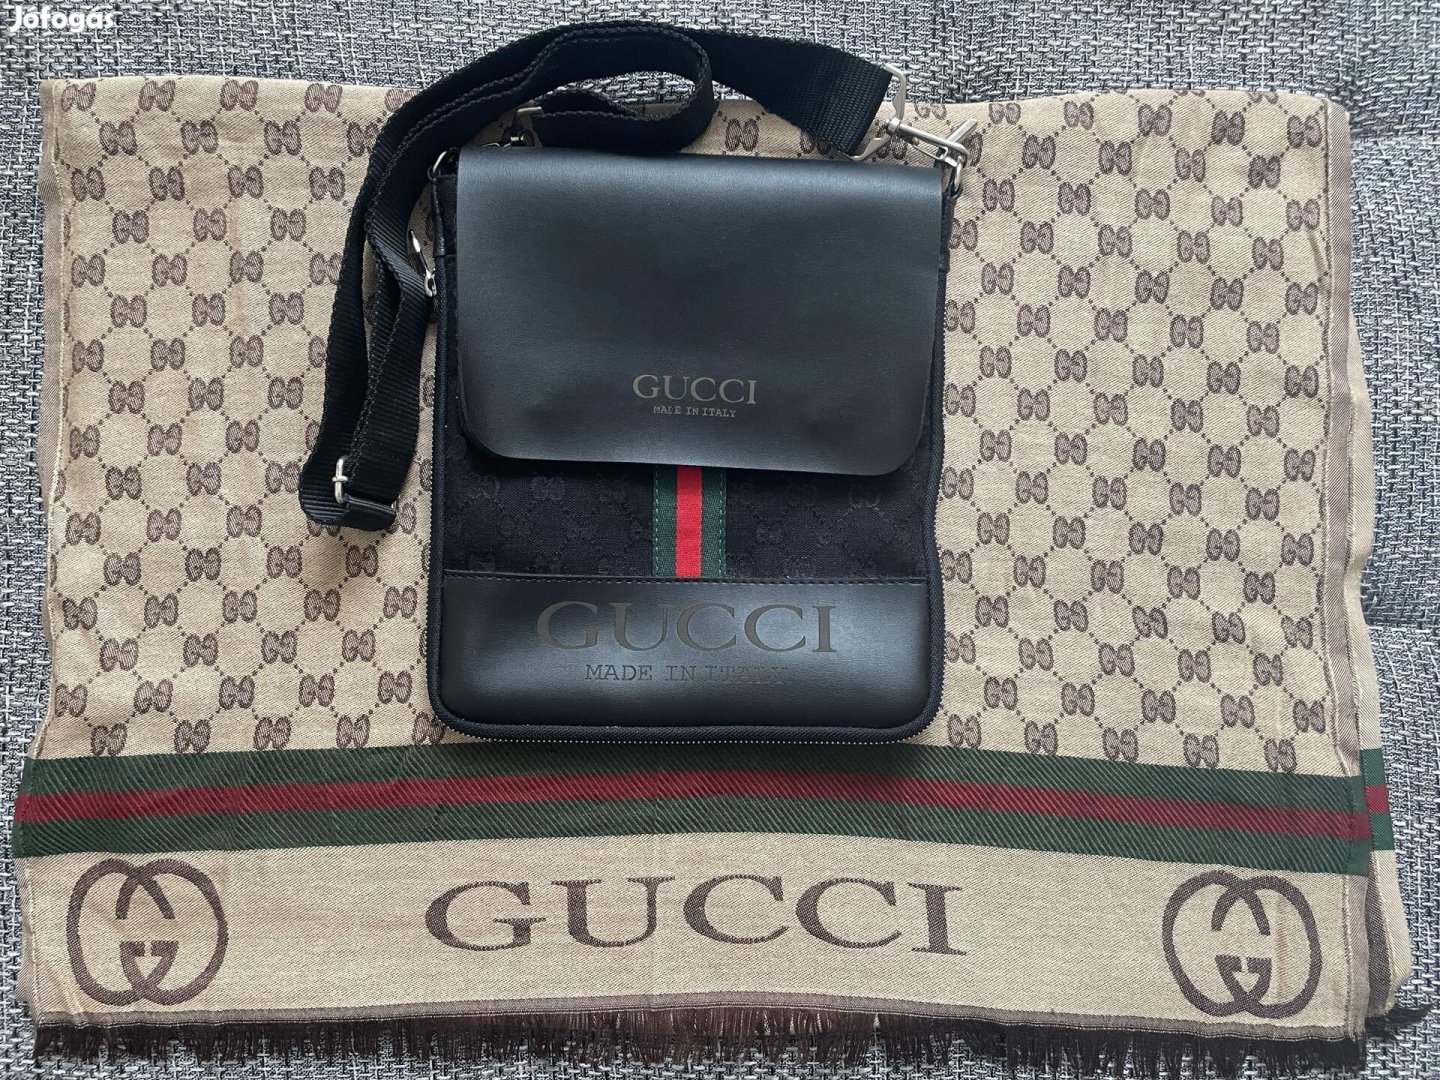 Gucci táska és Gucci sál